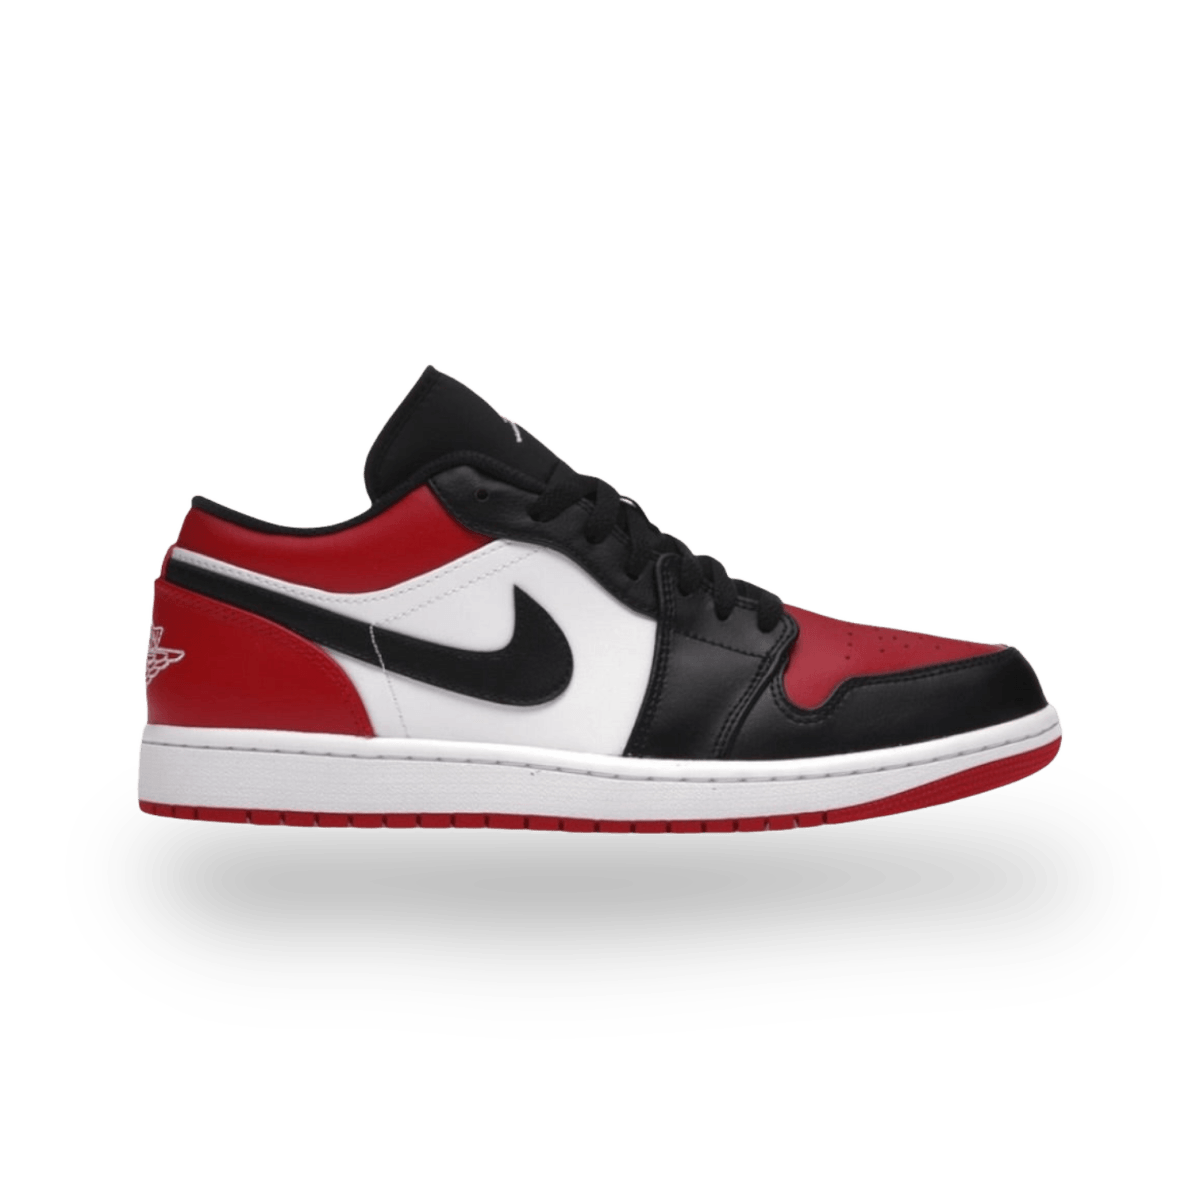 Jordan 1 Low Bred Toe - Low Sneaker - Jawns on Fire Sneakers & Streetwear